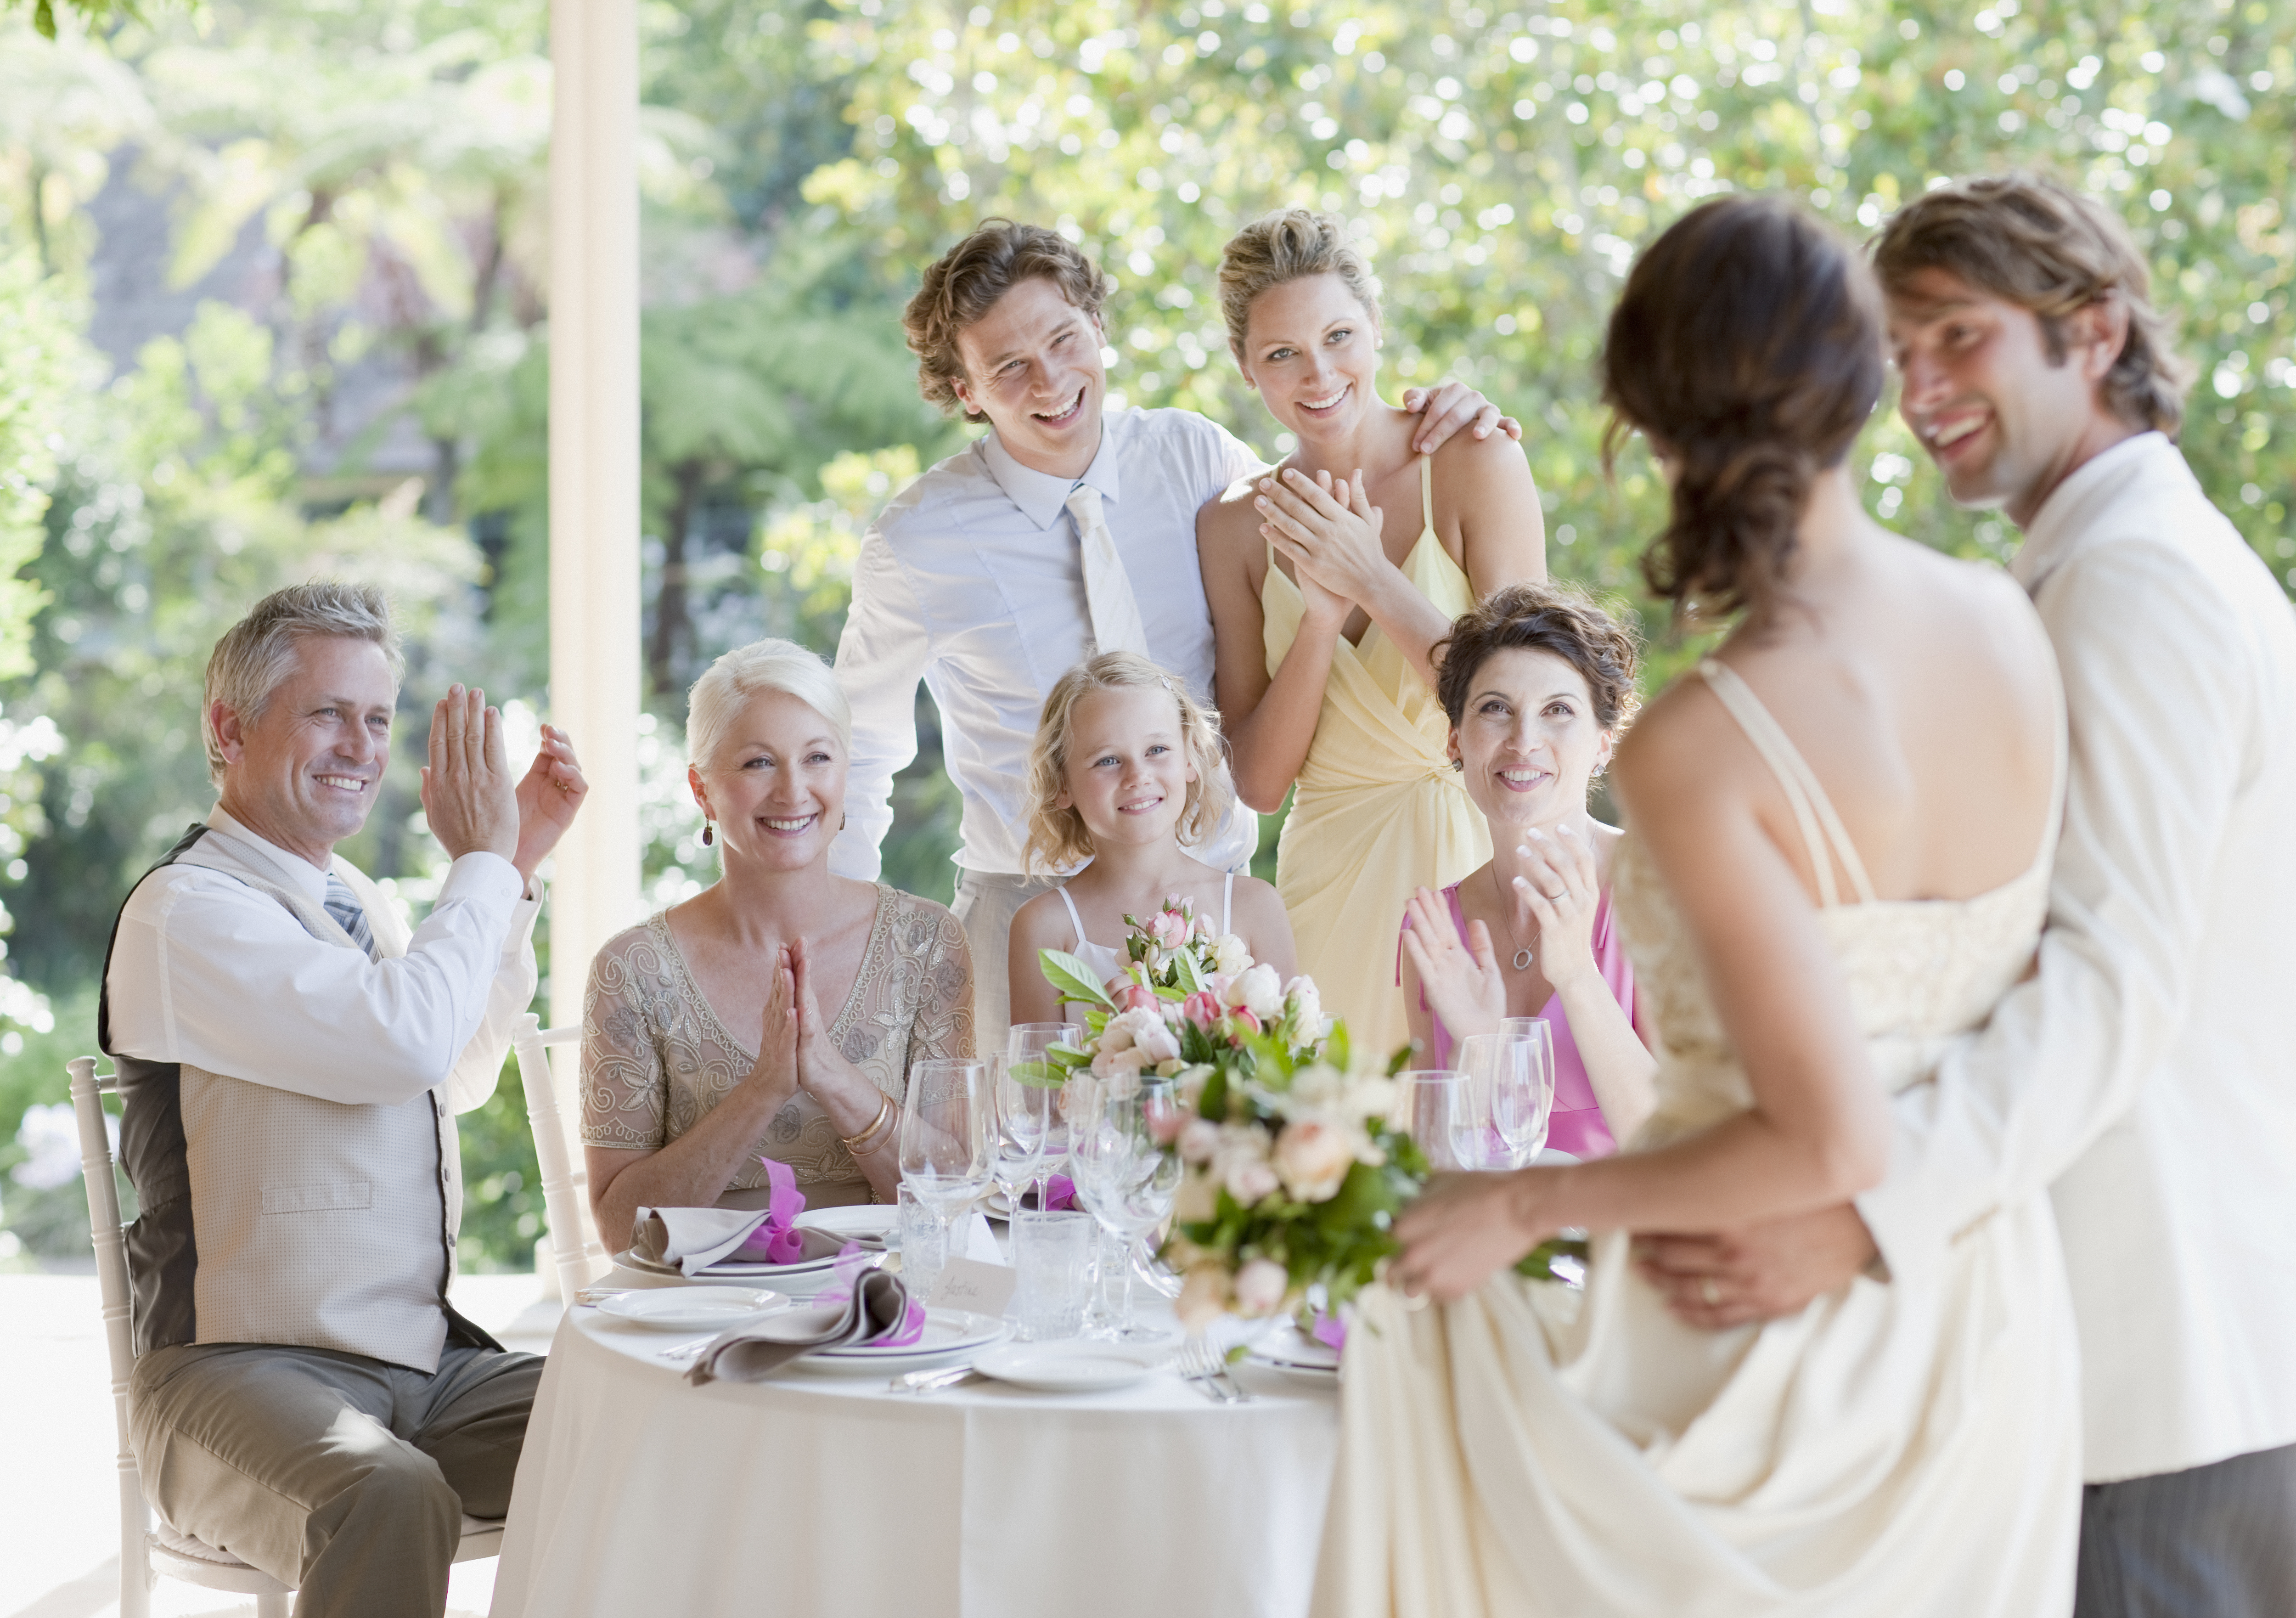 Familiares regocijándose en la recepción de una boda | Foto: Getty Images